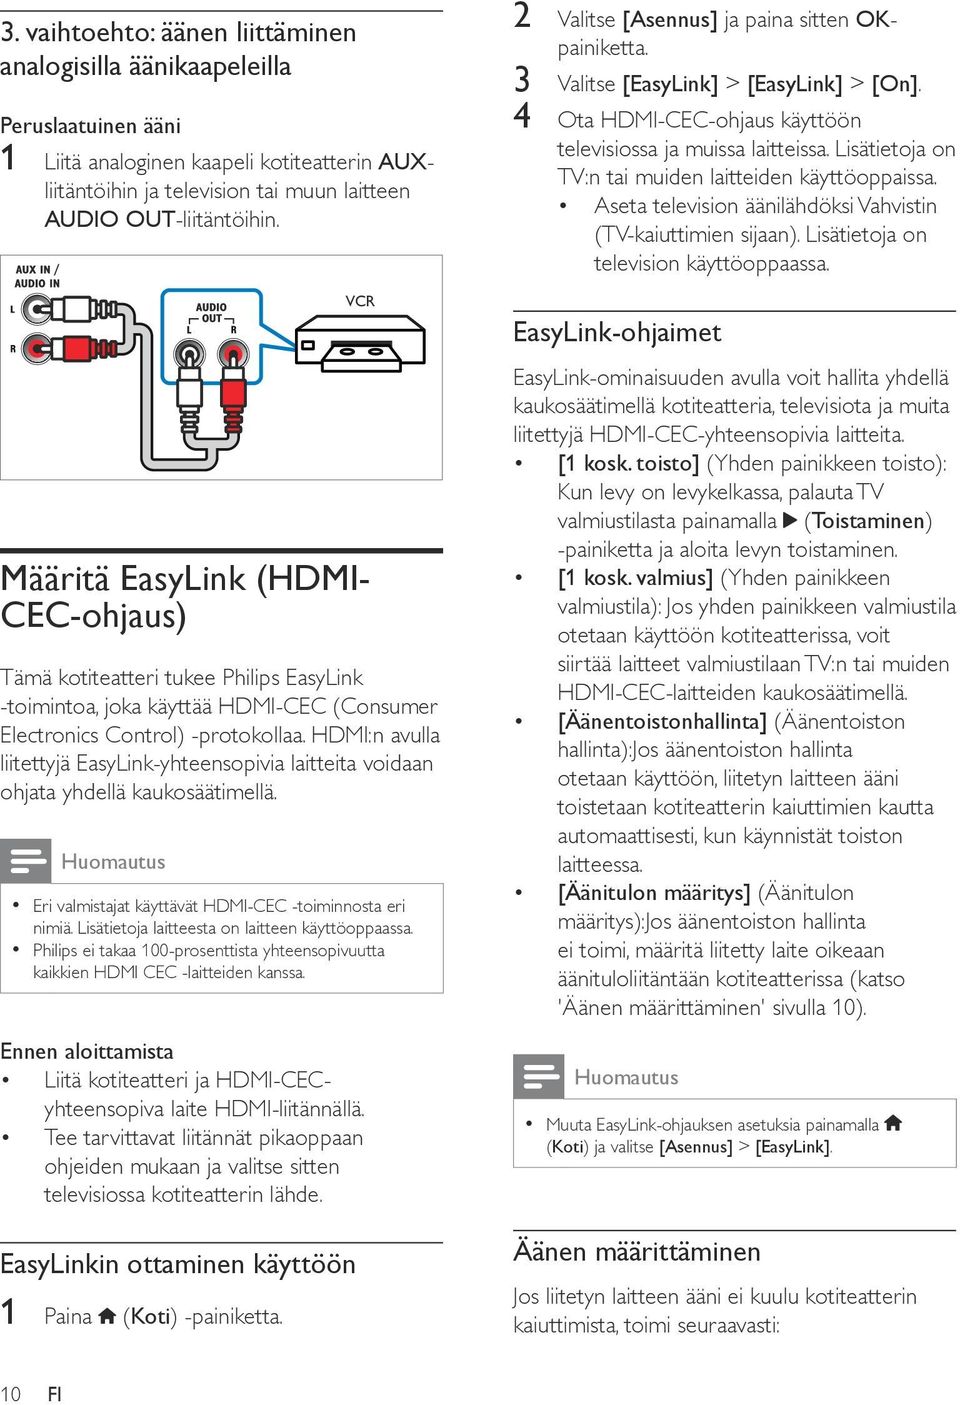 HDMI:n avulla liitettyjä EasyLink-yhteensopivia laitteita voidaan ohjata yhdellä kaukosäätimellä. Huomautus Eri valmistajat käyttävät HDMI-CEC -toiminnosta eri nimiä.